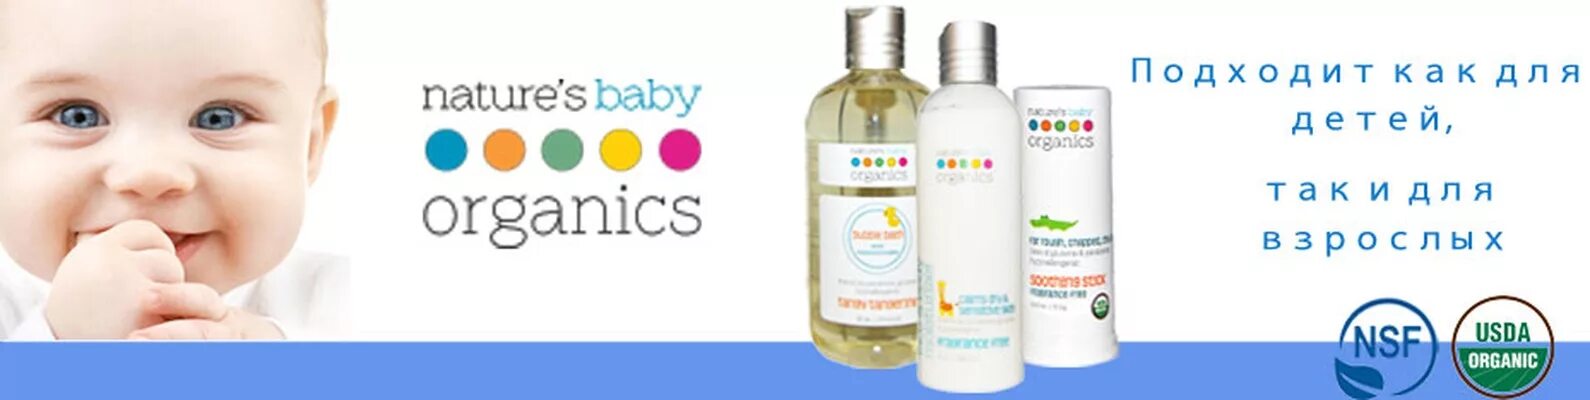 Natural babies. Nature's Baby Organics logo. Nature's Baby Organics крем от кашля. Ребенок Органик что это. Счастливые малыши с натурес Беби органикой.